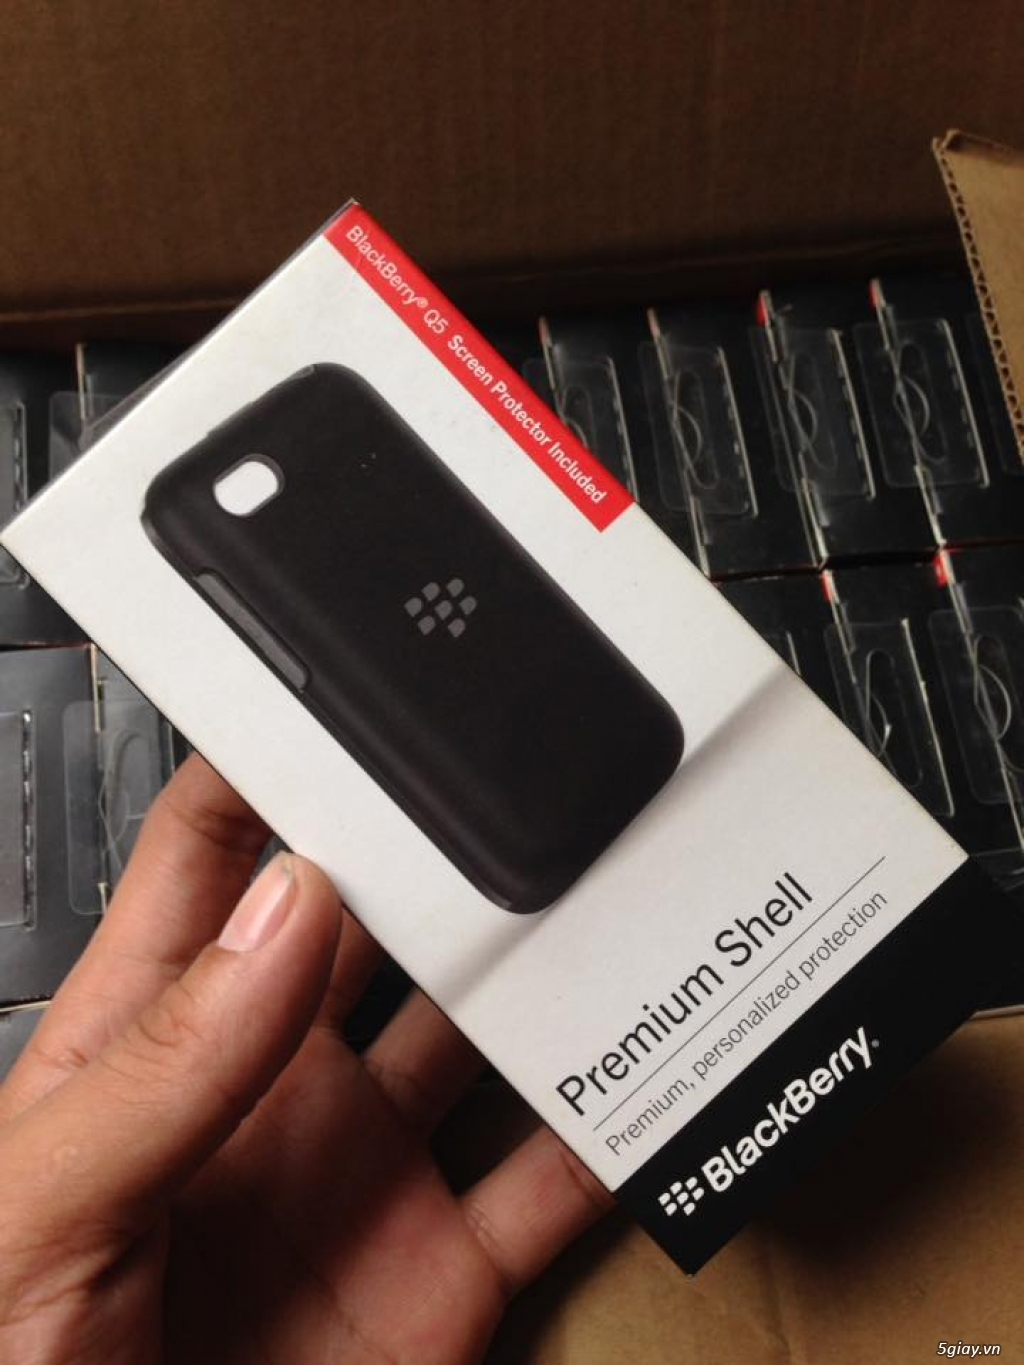 Premium Shell Blackberry Q5 new 100% nguyên hộp nhập khẩu thanh lý - 2